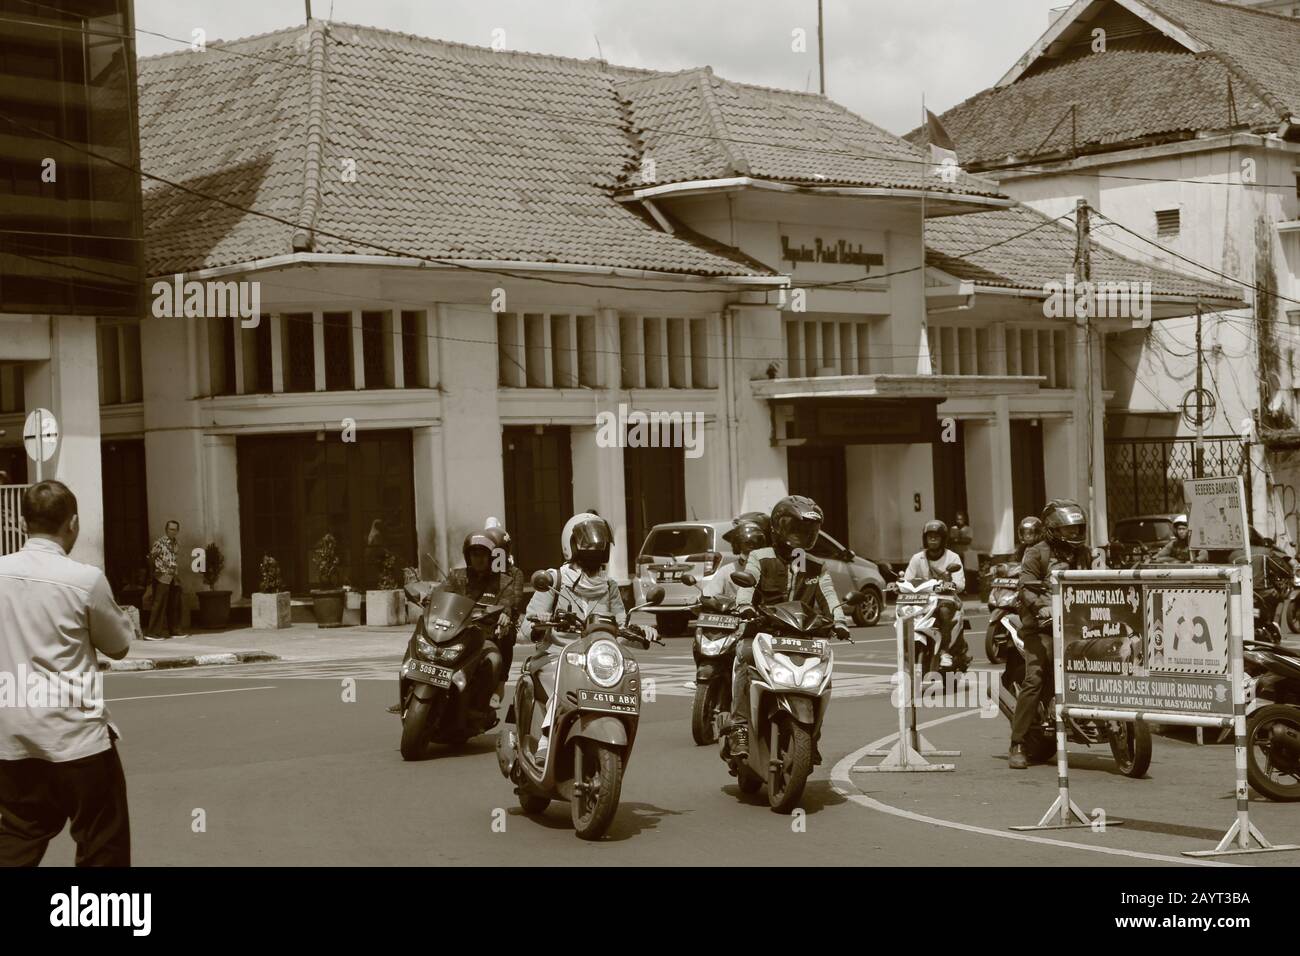 Eine Ecke der Stadt Bandung, die häufig in Gebäuden des kulturellen Erbes auf Jalan Braga, dem Zentrum des niederländischen Vereins, zu finden ist Stockfoto